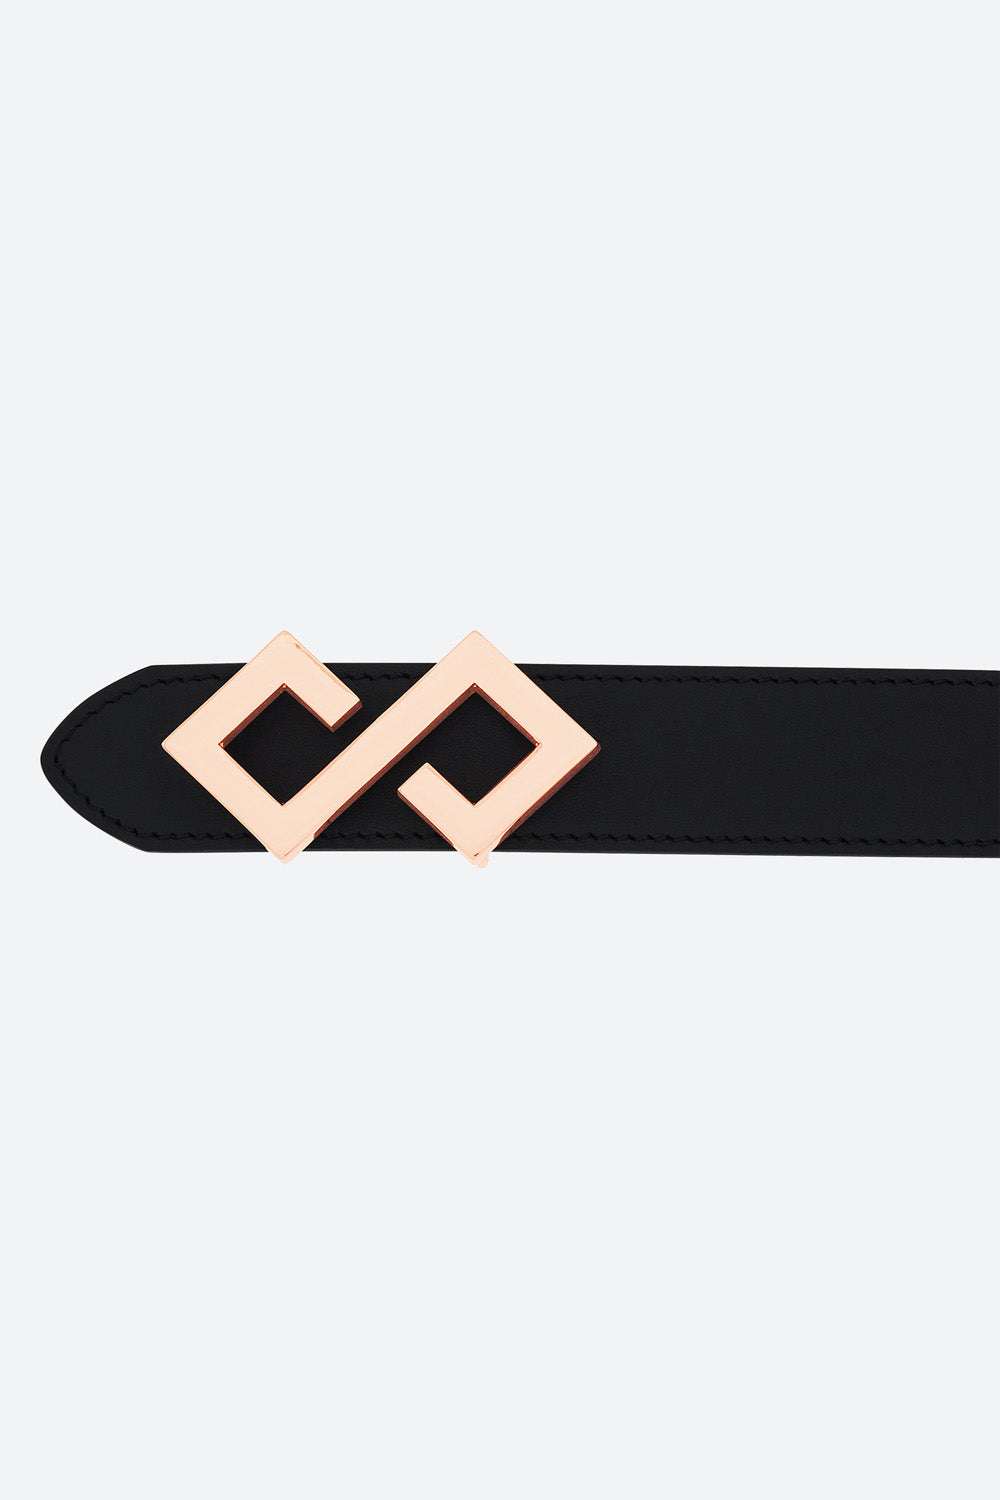 Women's Alvear Belt in Black, Rose Gold-toned Buckle